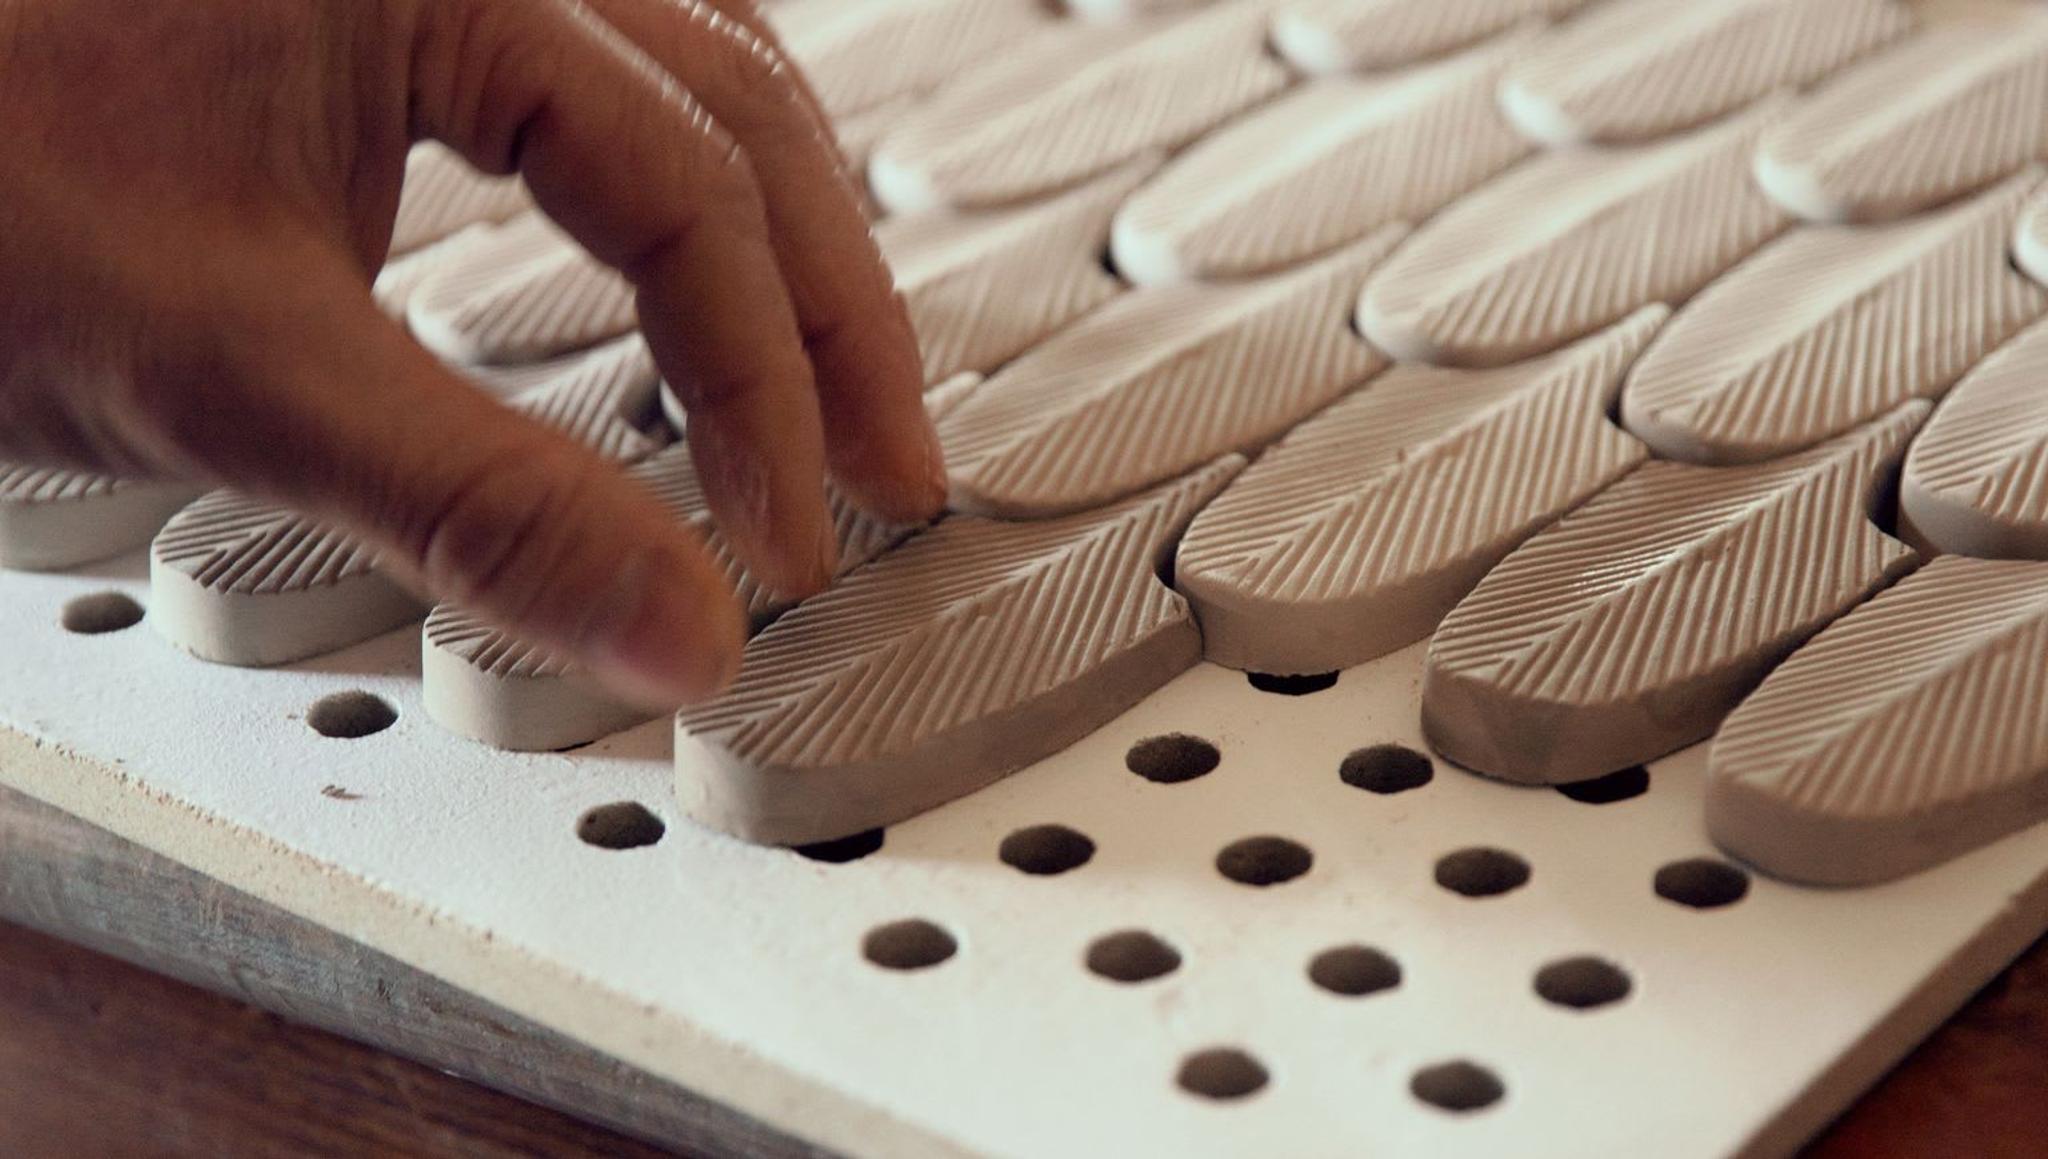 BottegaNove: Reinventare la ceramica tradizionale